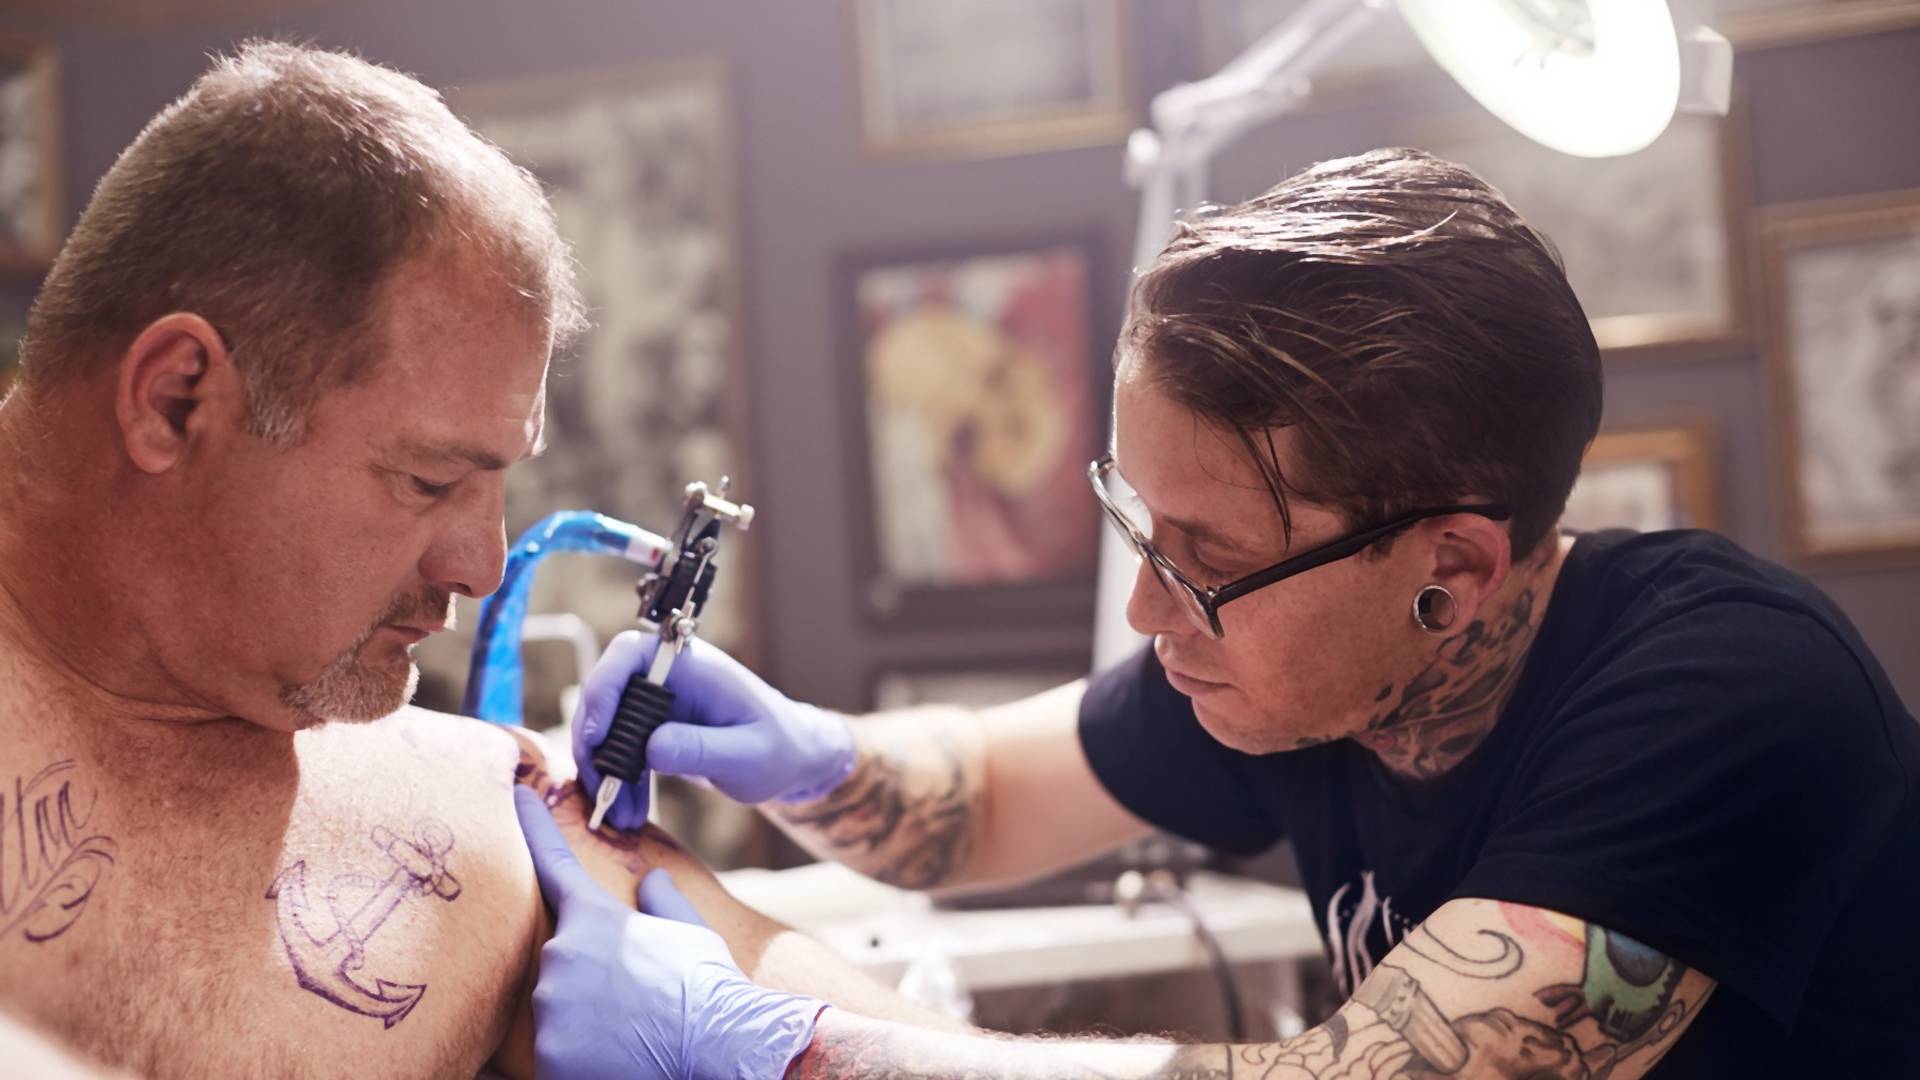 Kovid tetovaže su trend koji gospodari svetom: simboli pandemije na koži vas neće ostaviti ravnodušnim